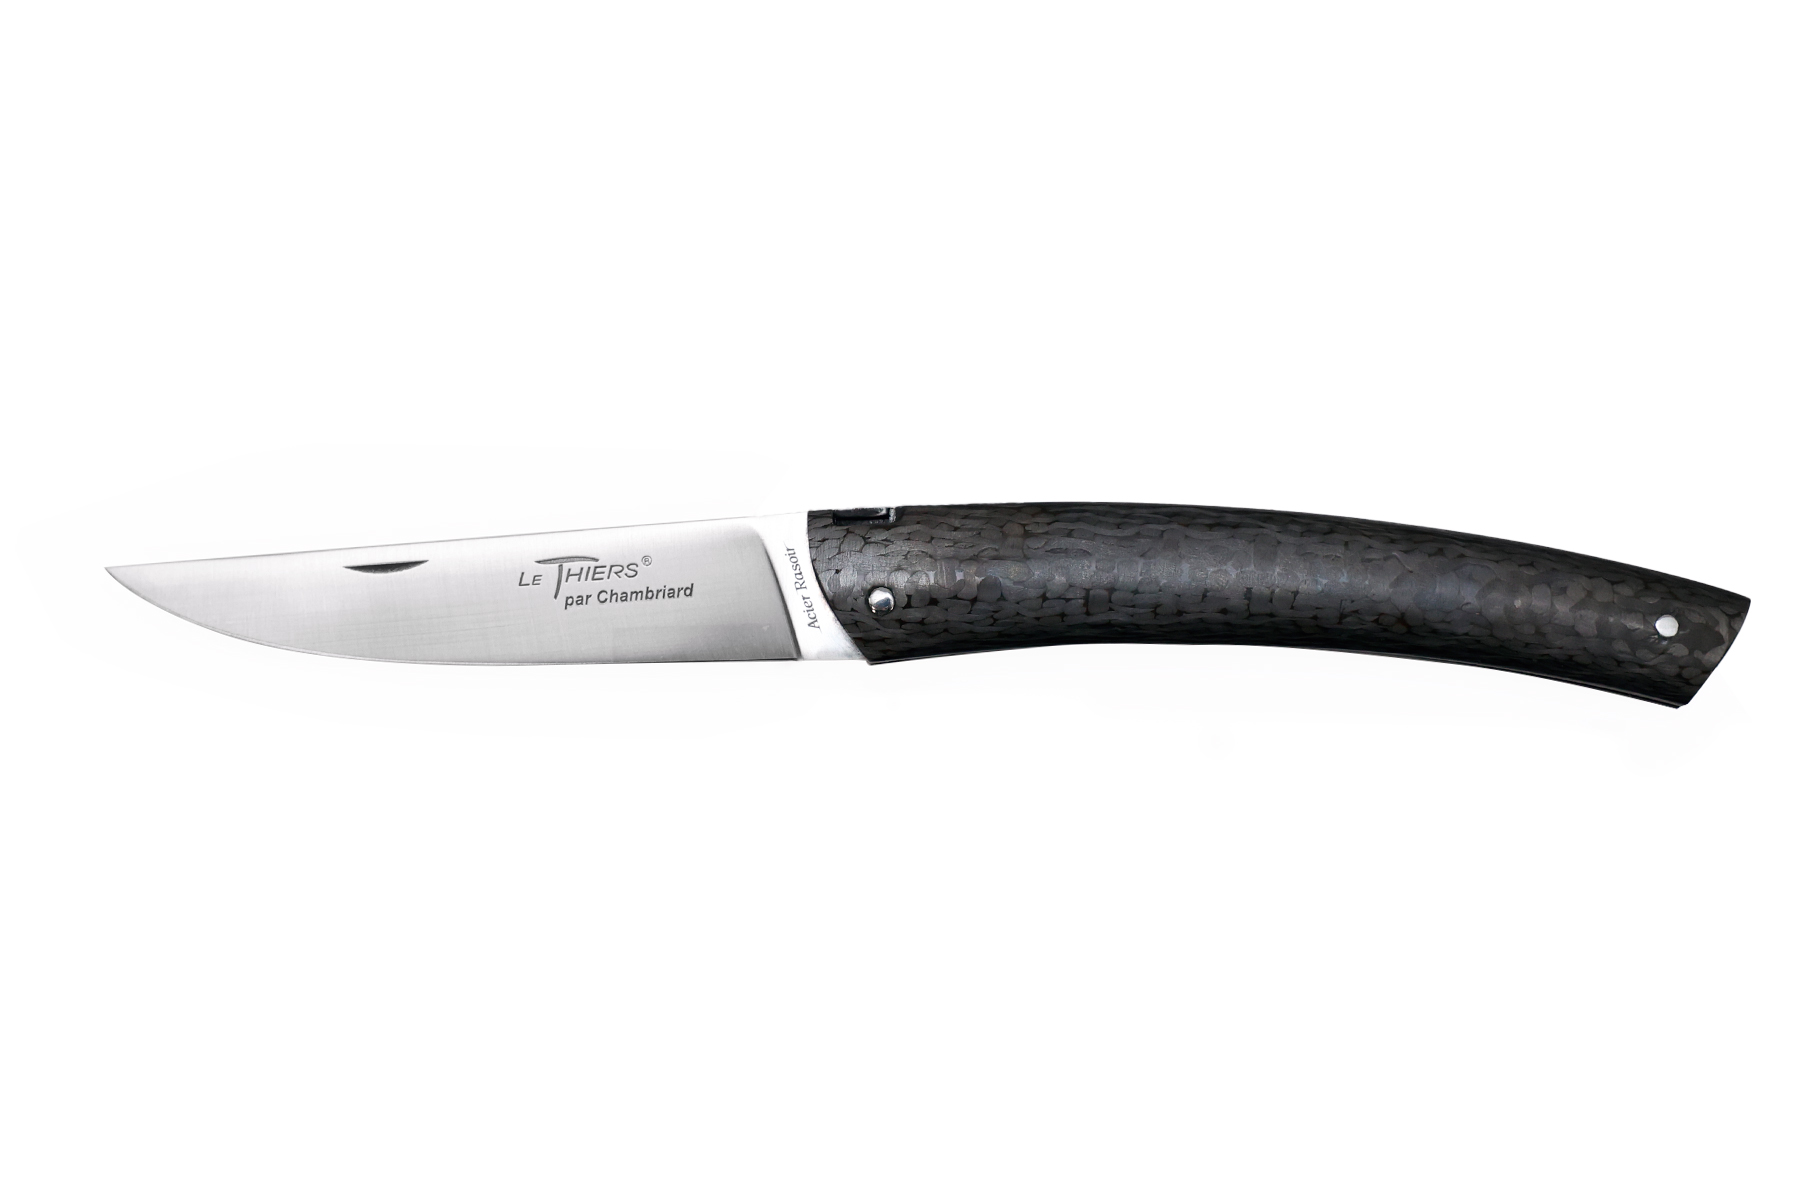 Couteau le Thiers par Chambriard "Compagnon extra-light" manche tout carbone